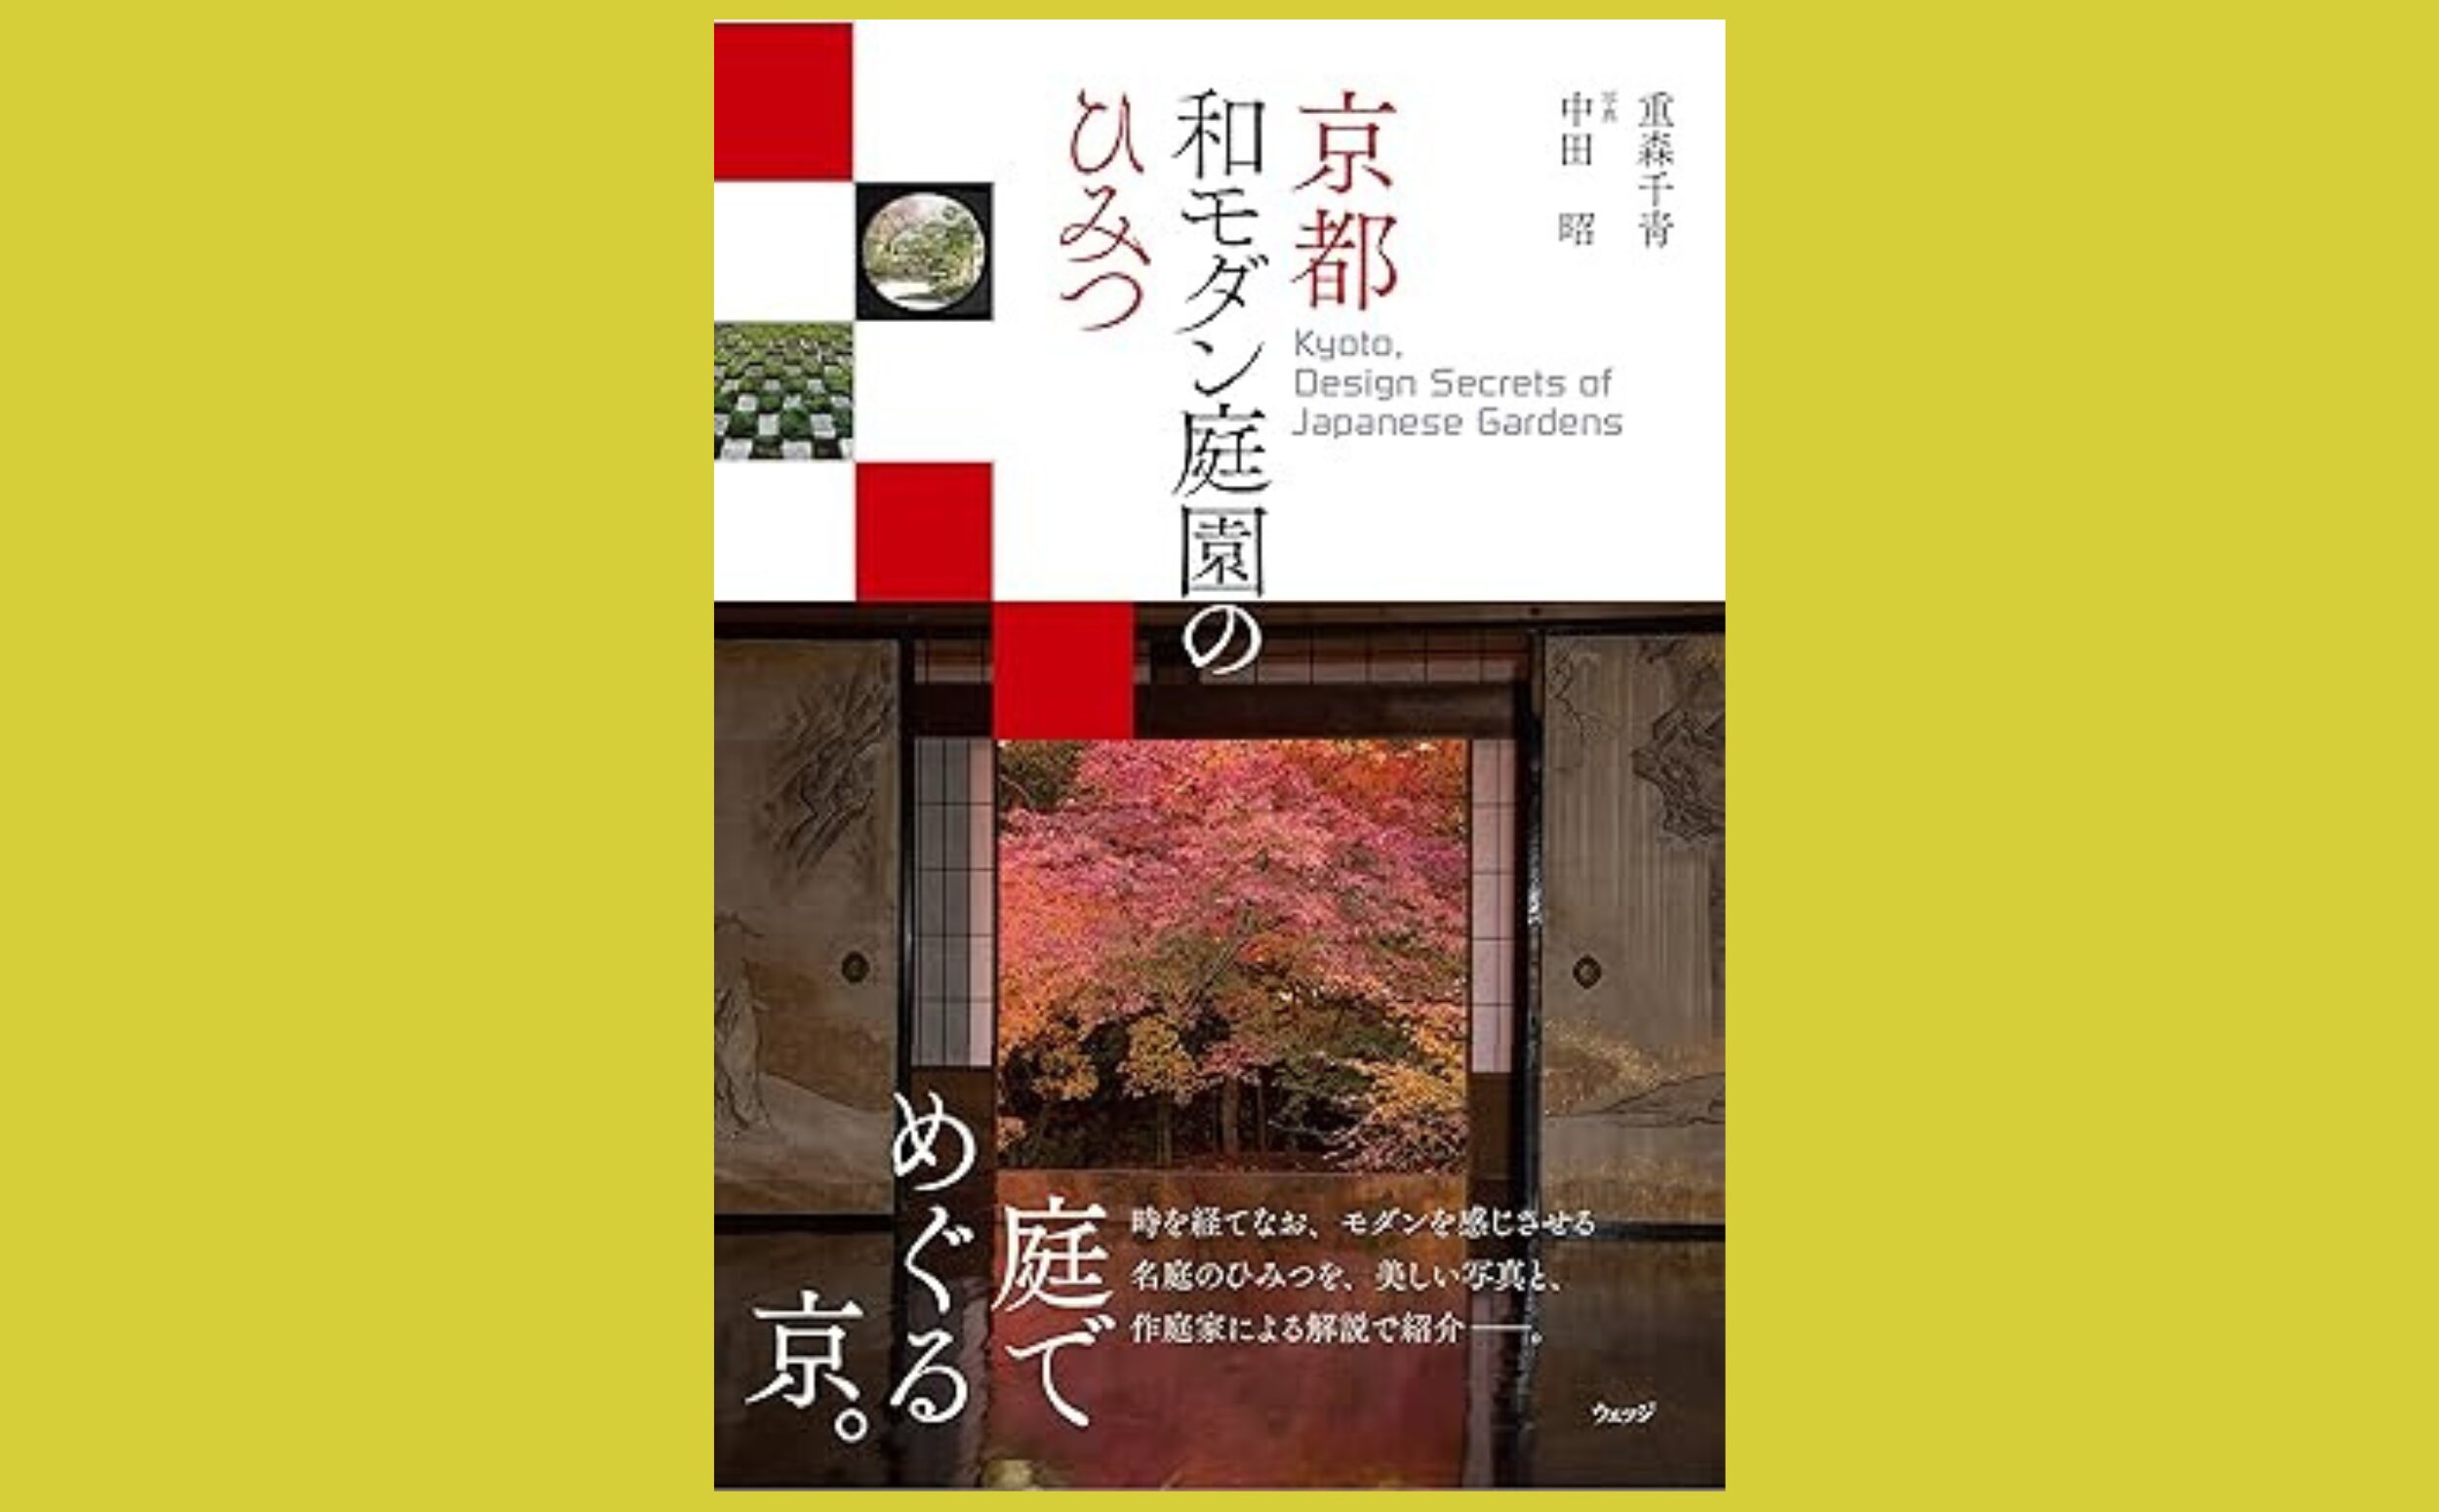 美術品としての日本庭園鑑賞ガイド『京都 和モダン庭園のひみつ』